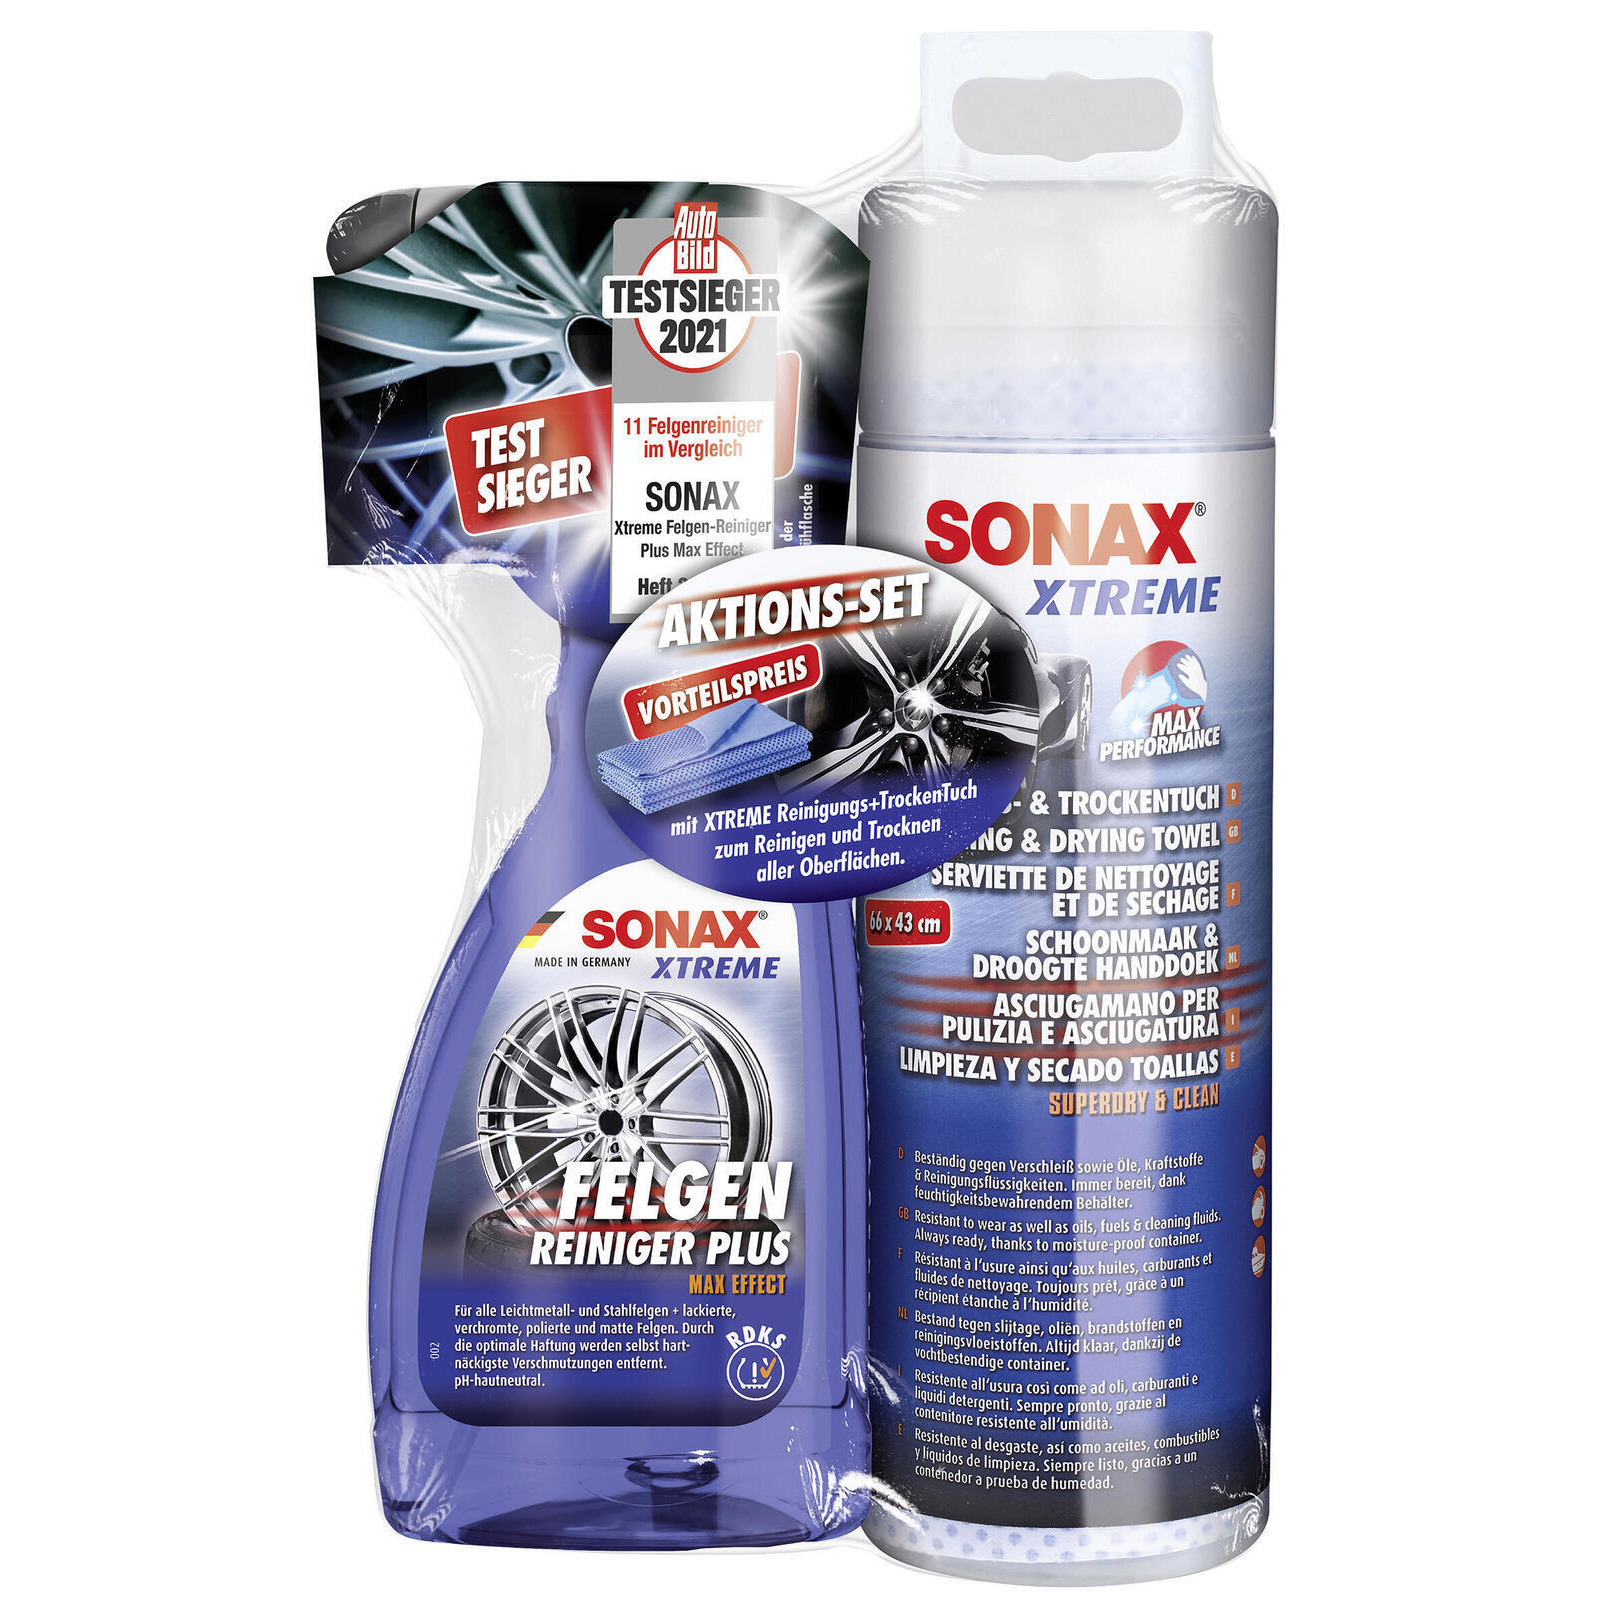 SONAX Rim Cleaner XTREME FelgenReiniger + XTREME Reinigungs+TrockenTuch Aktion